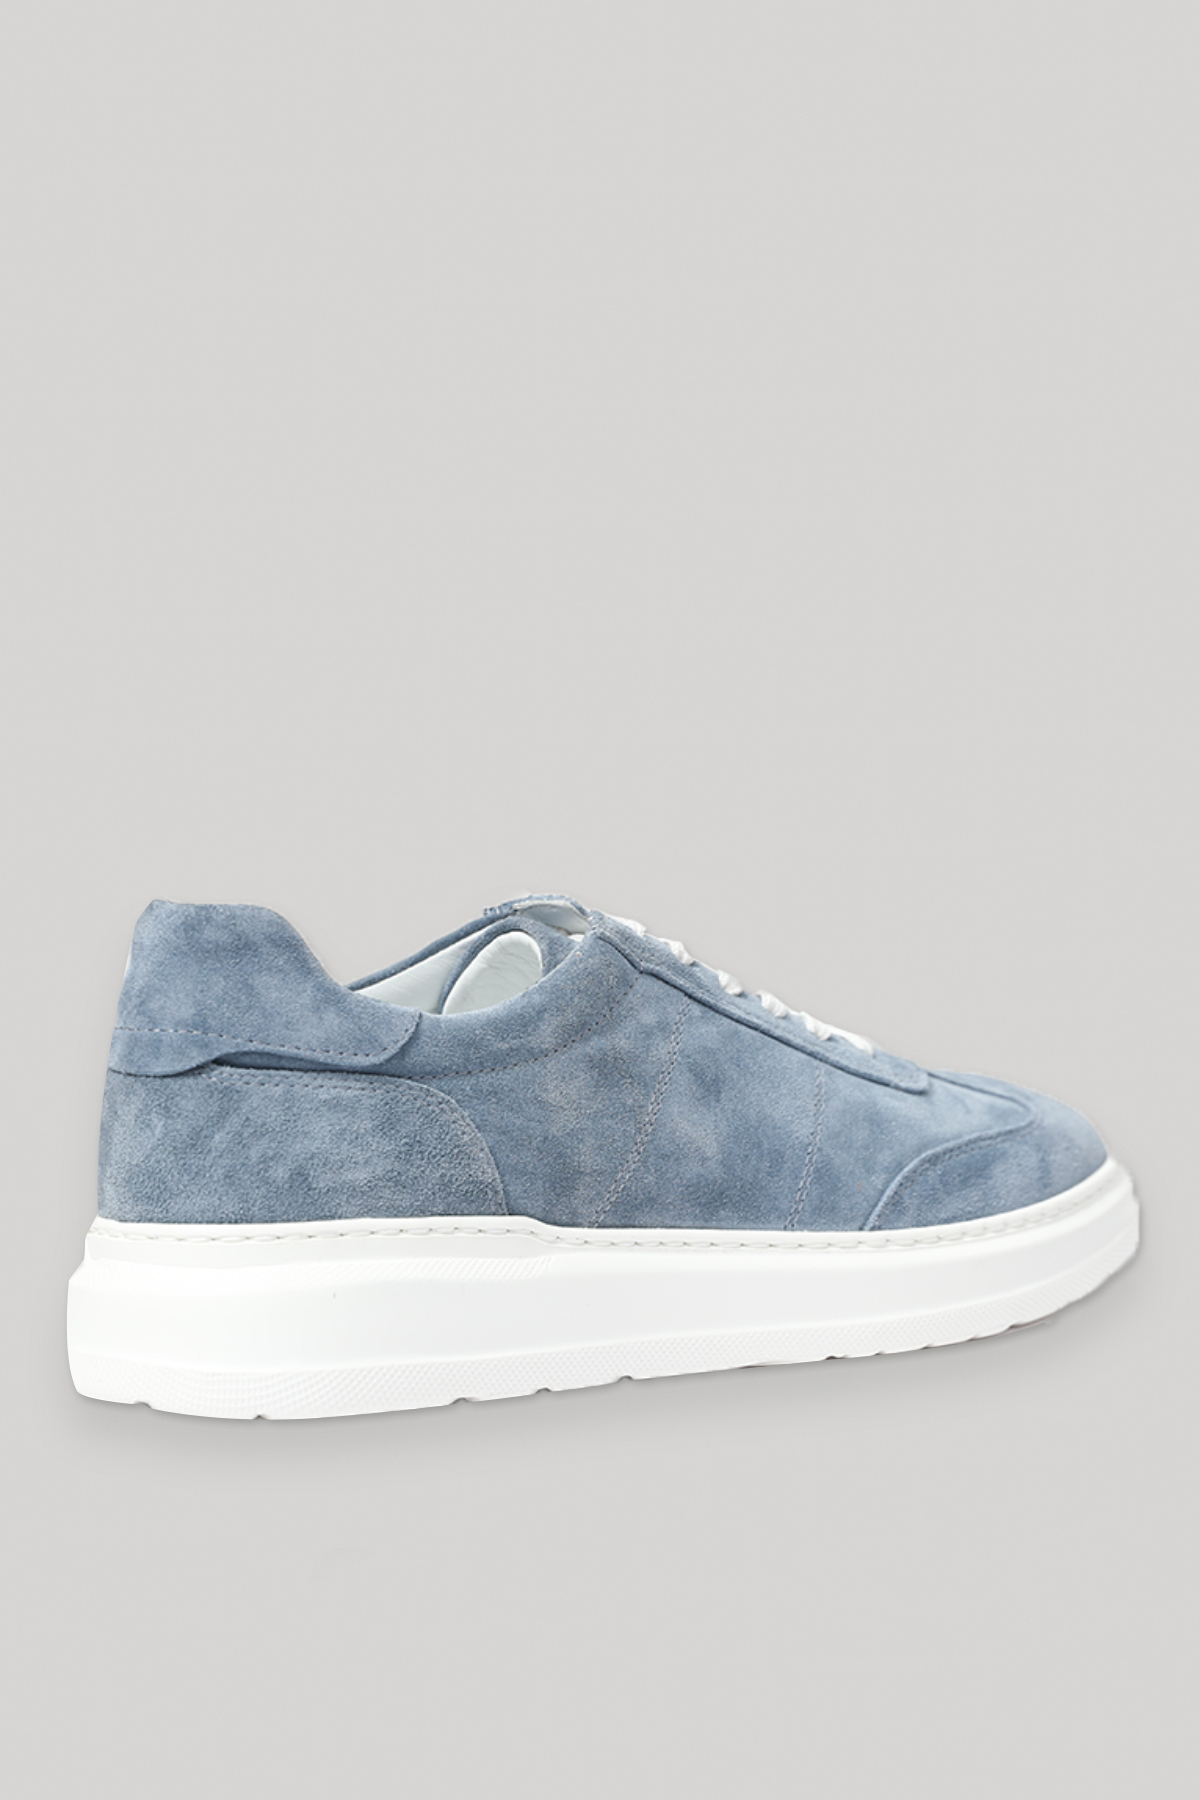 Toledo- Eg Erkek Deri Sneaker Ayakkabı Açık Mavi